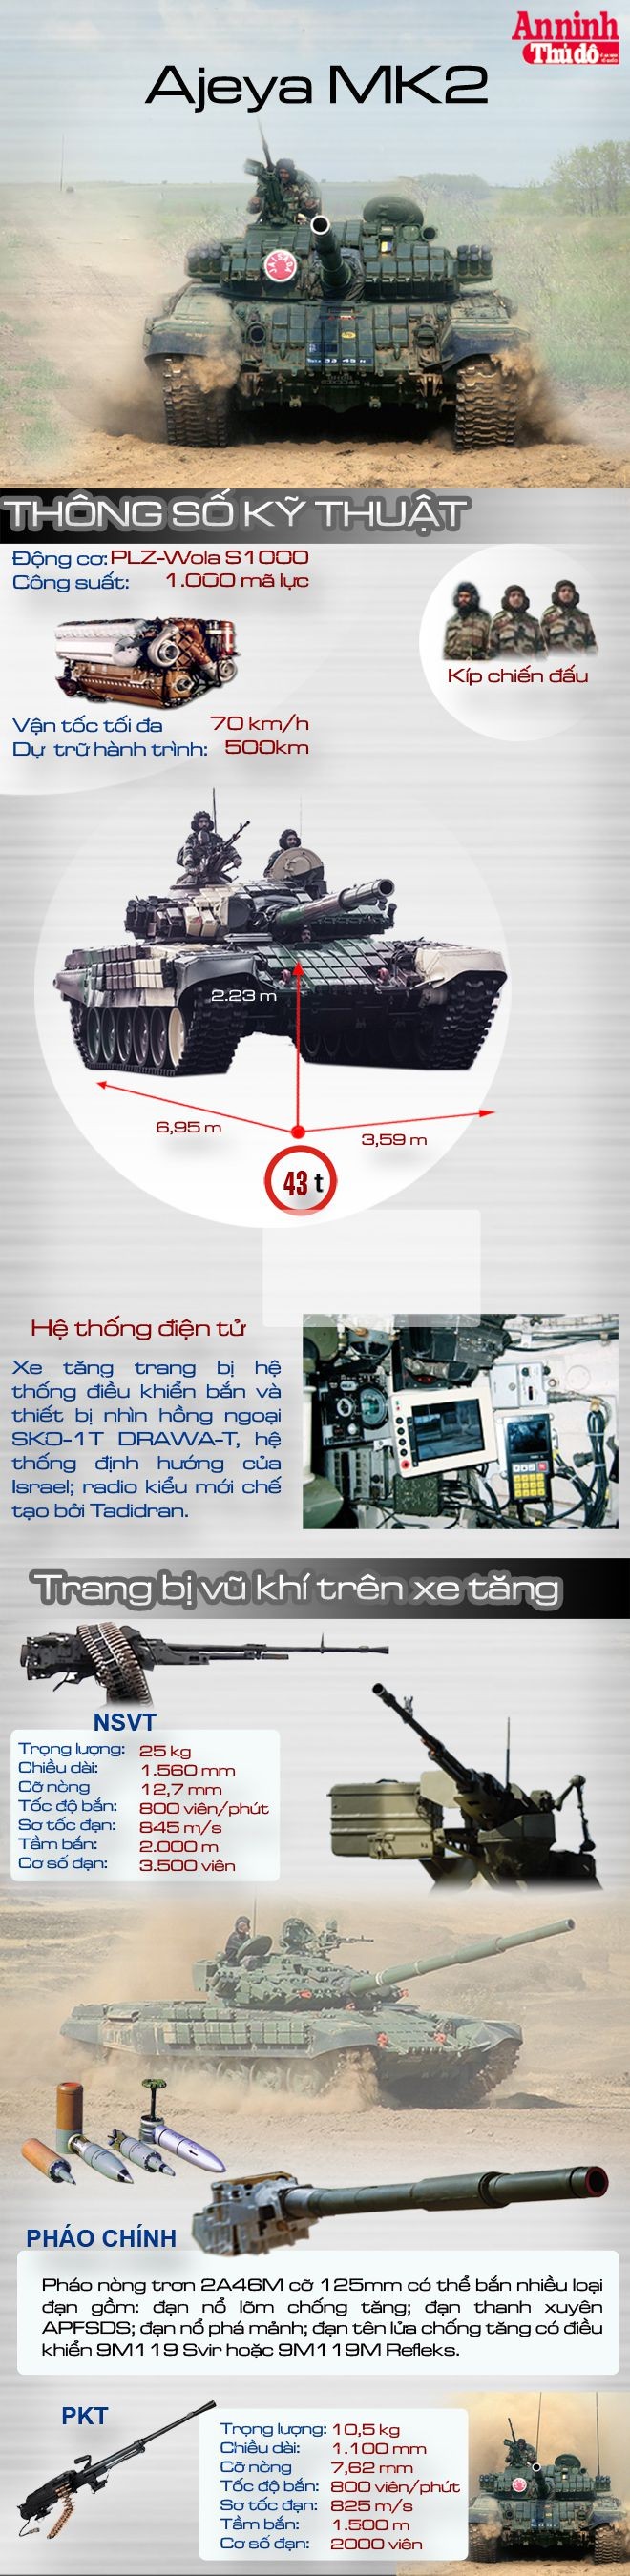 [Infographic] Ajeya MK2 - Uy lực của tăng Ấn Độ đang áp sát biên giới Trung Quốc ảnh 1